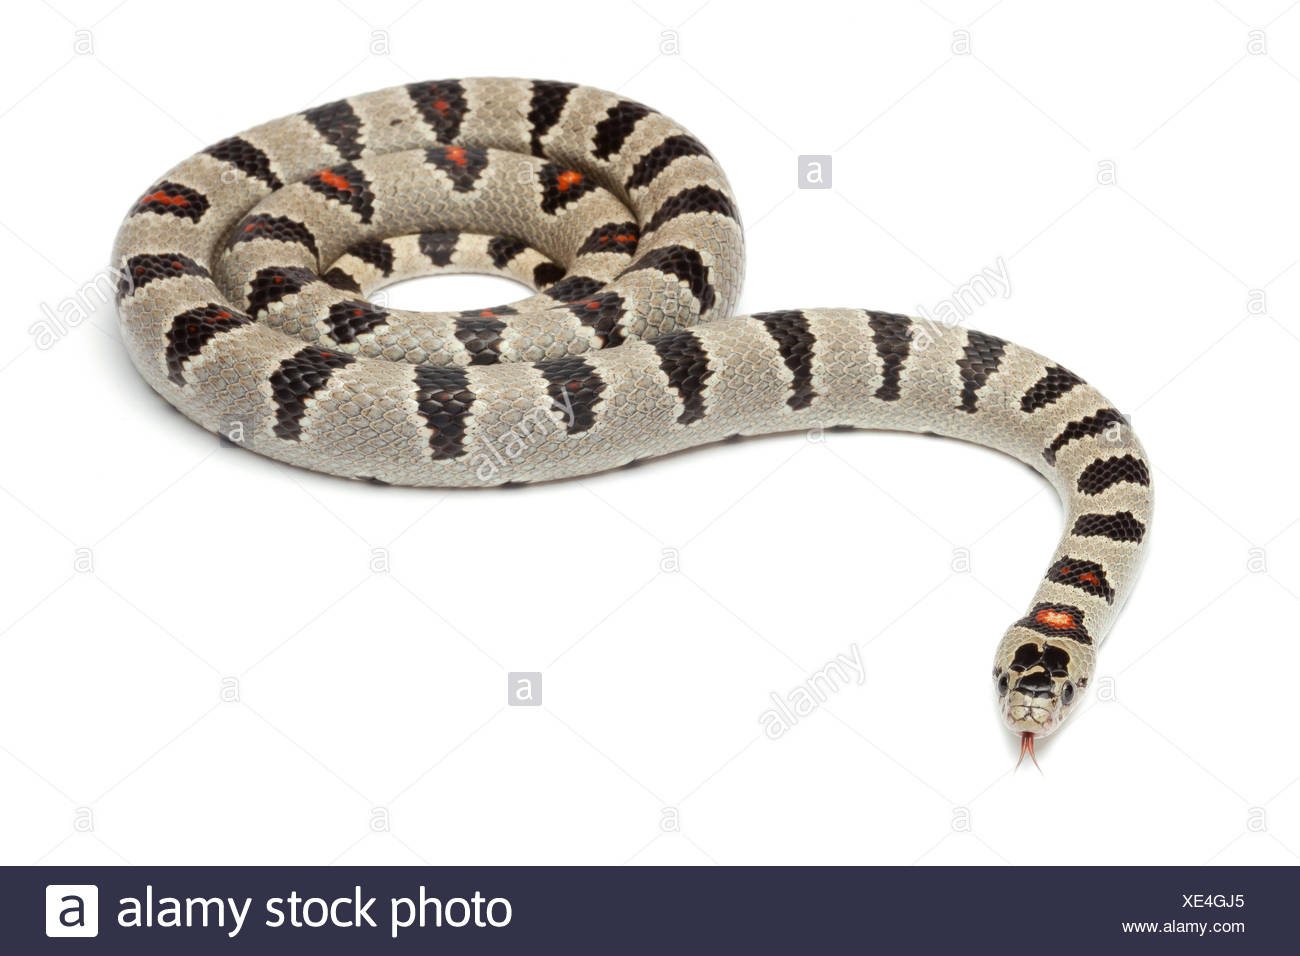 Durango King Snake On White Background Stock Photo